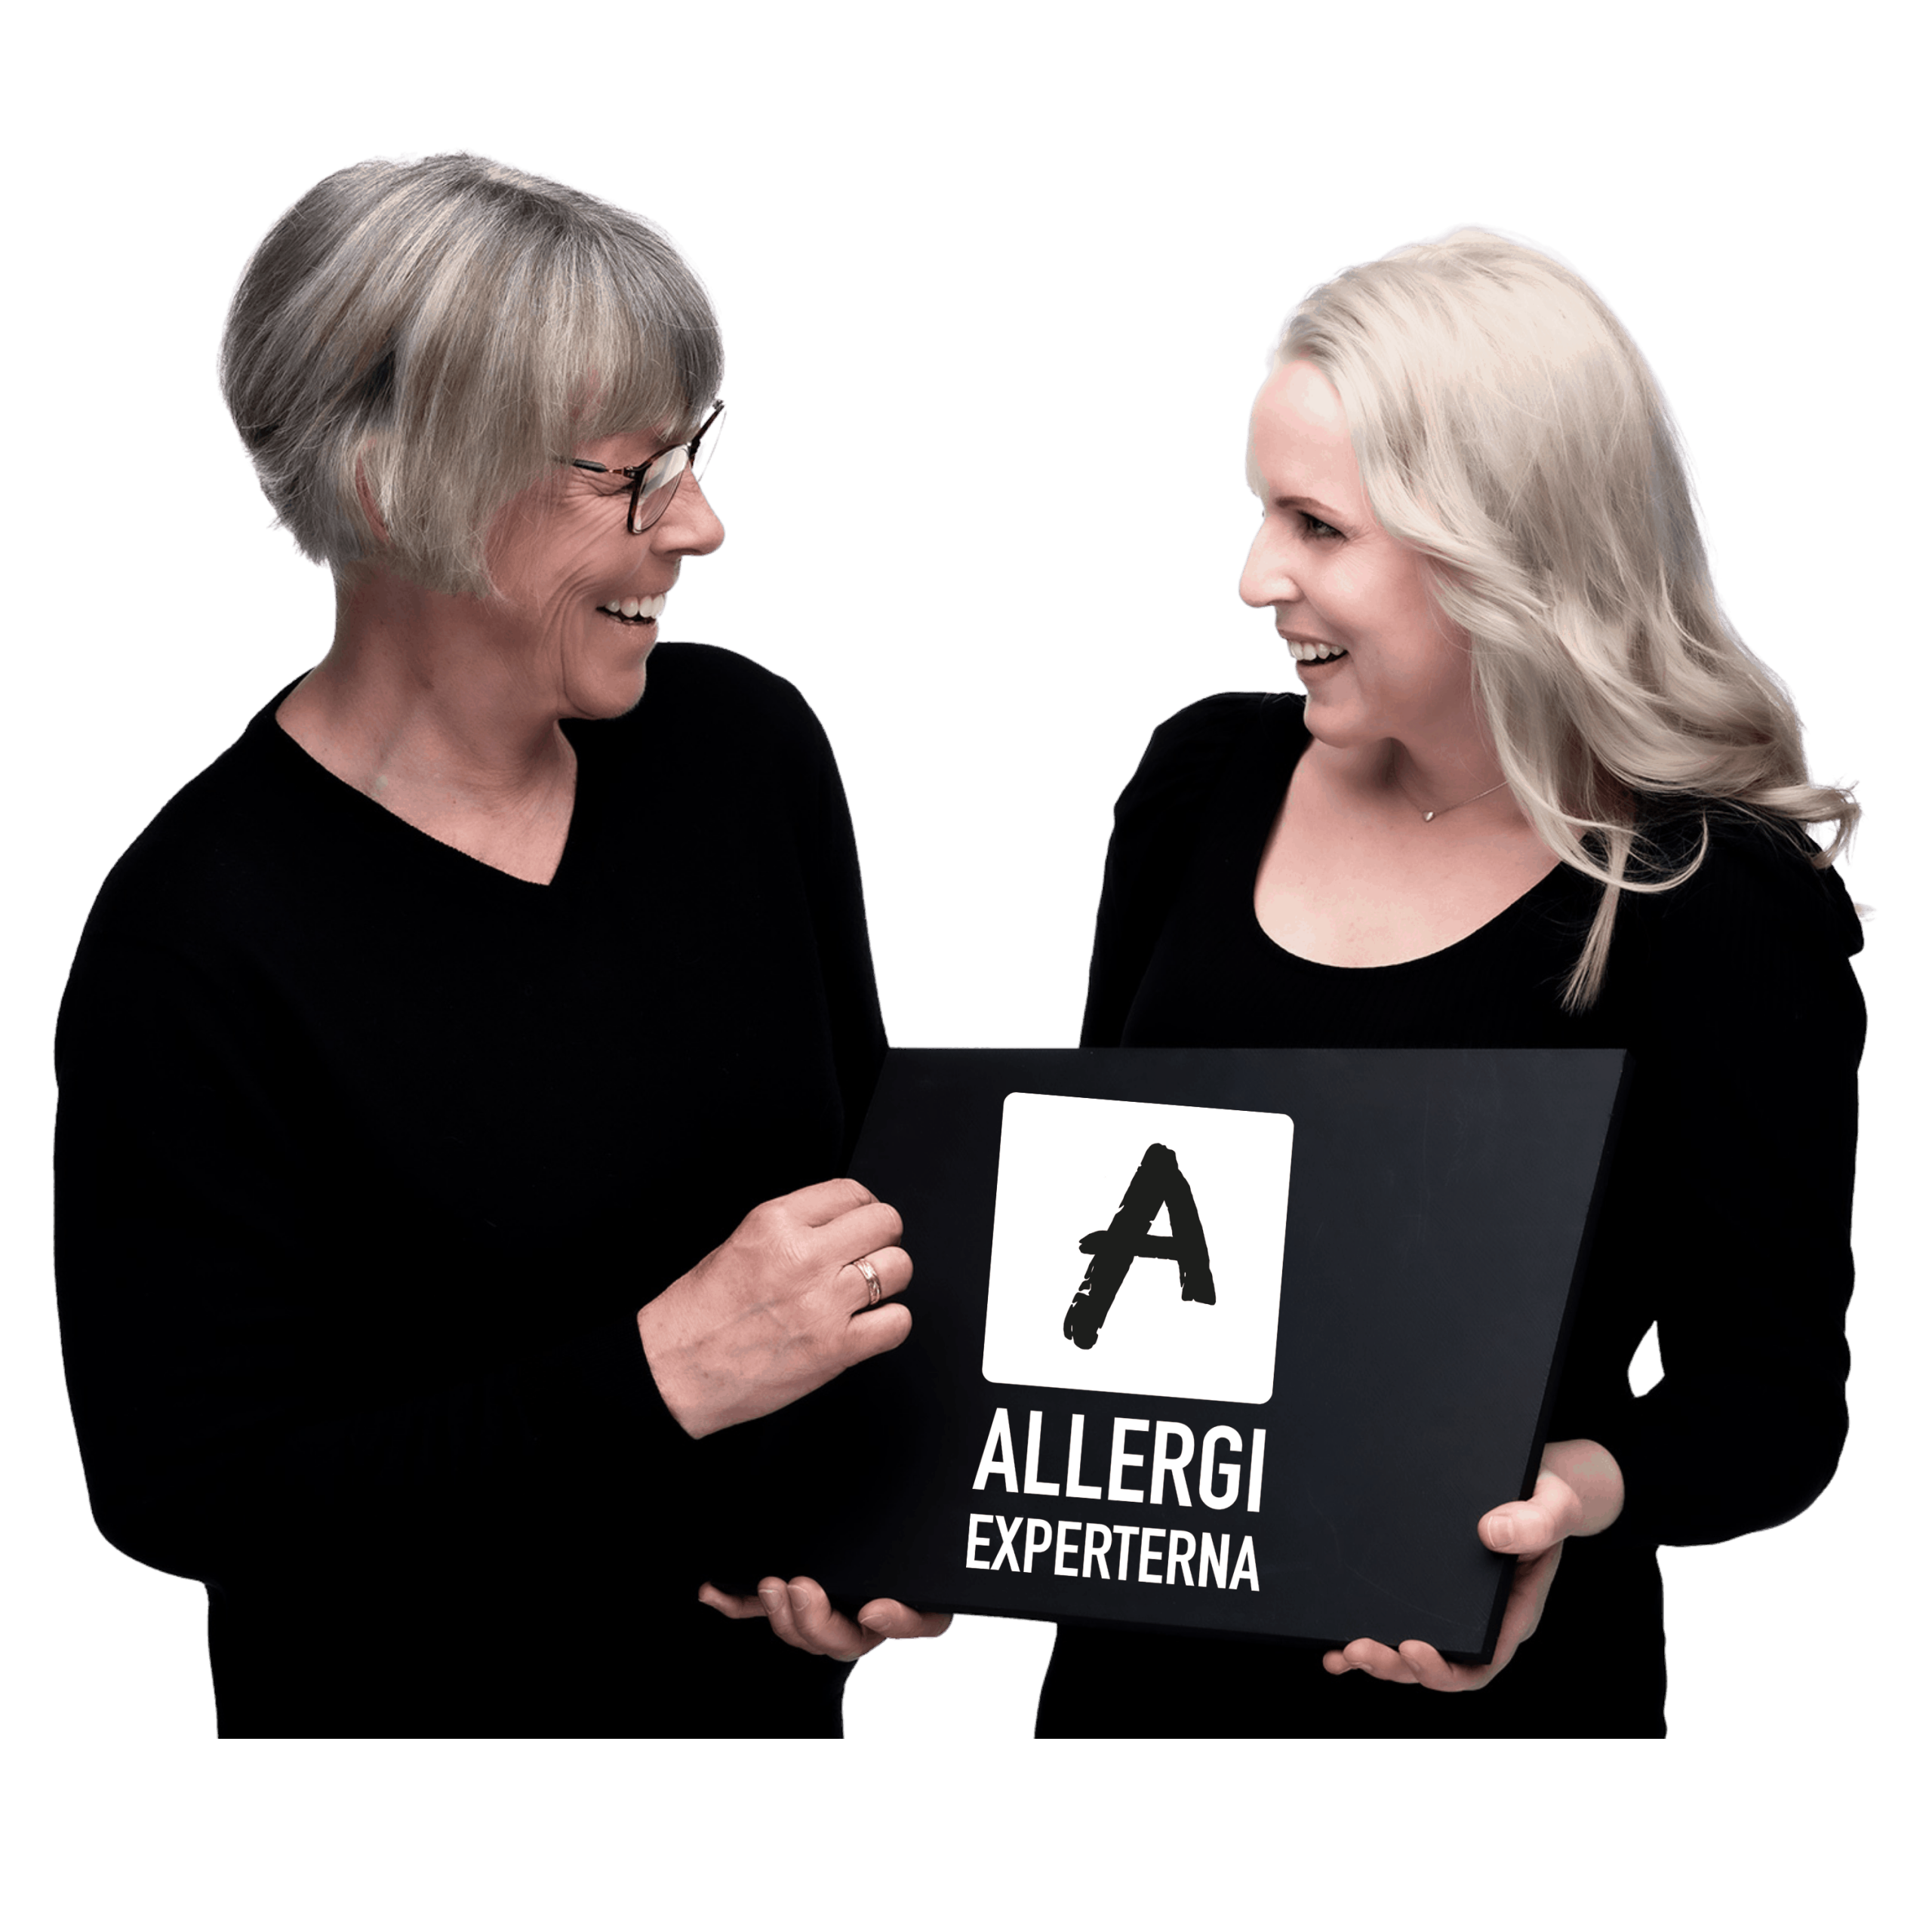 Allergiexperterna- Rätt från början